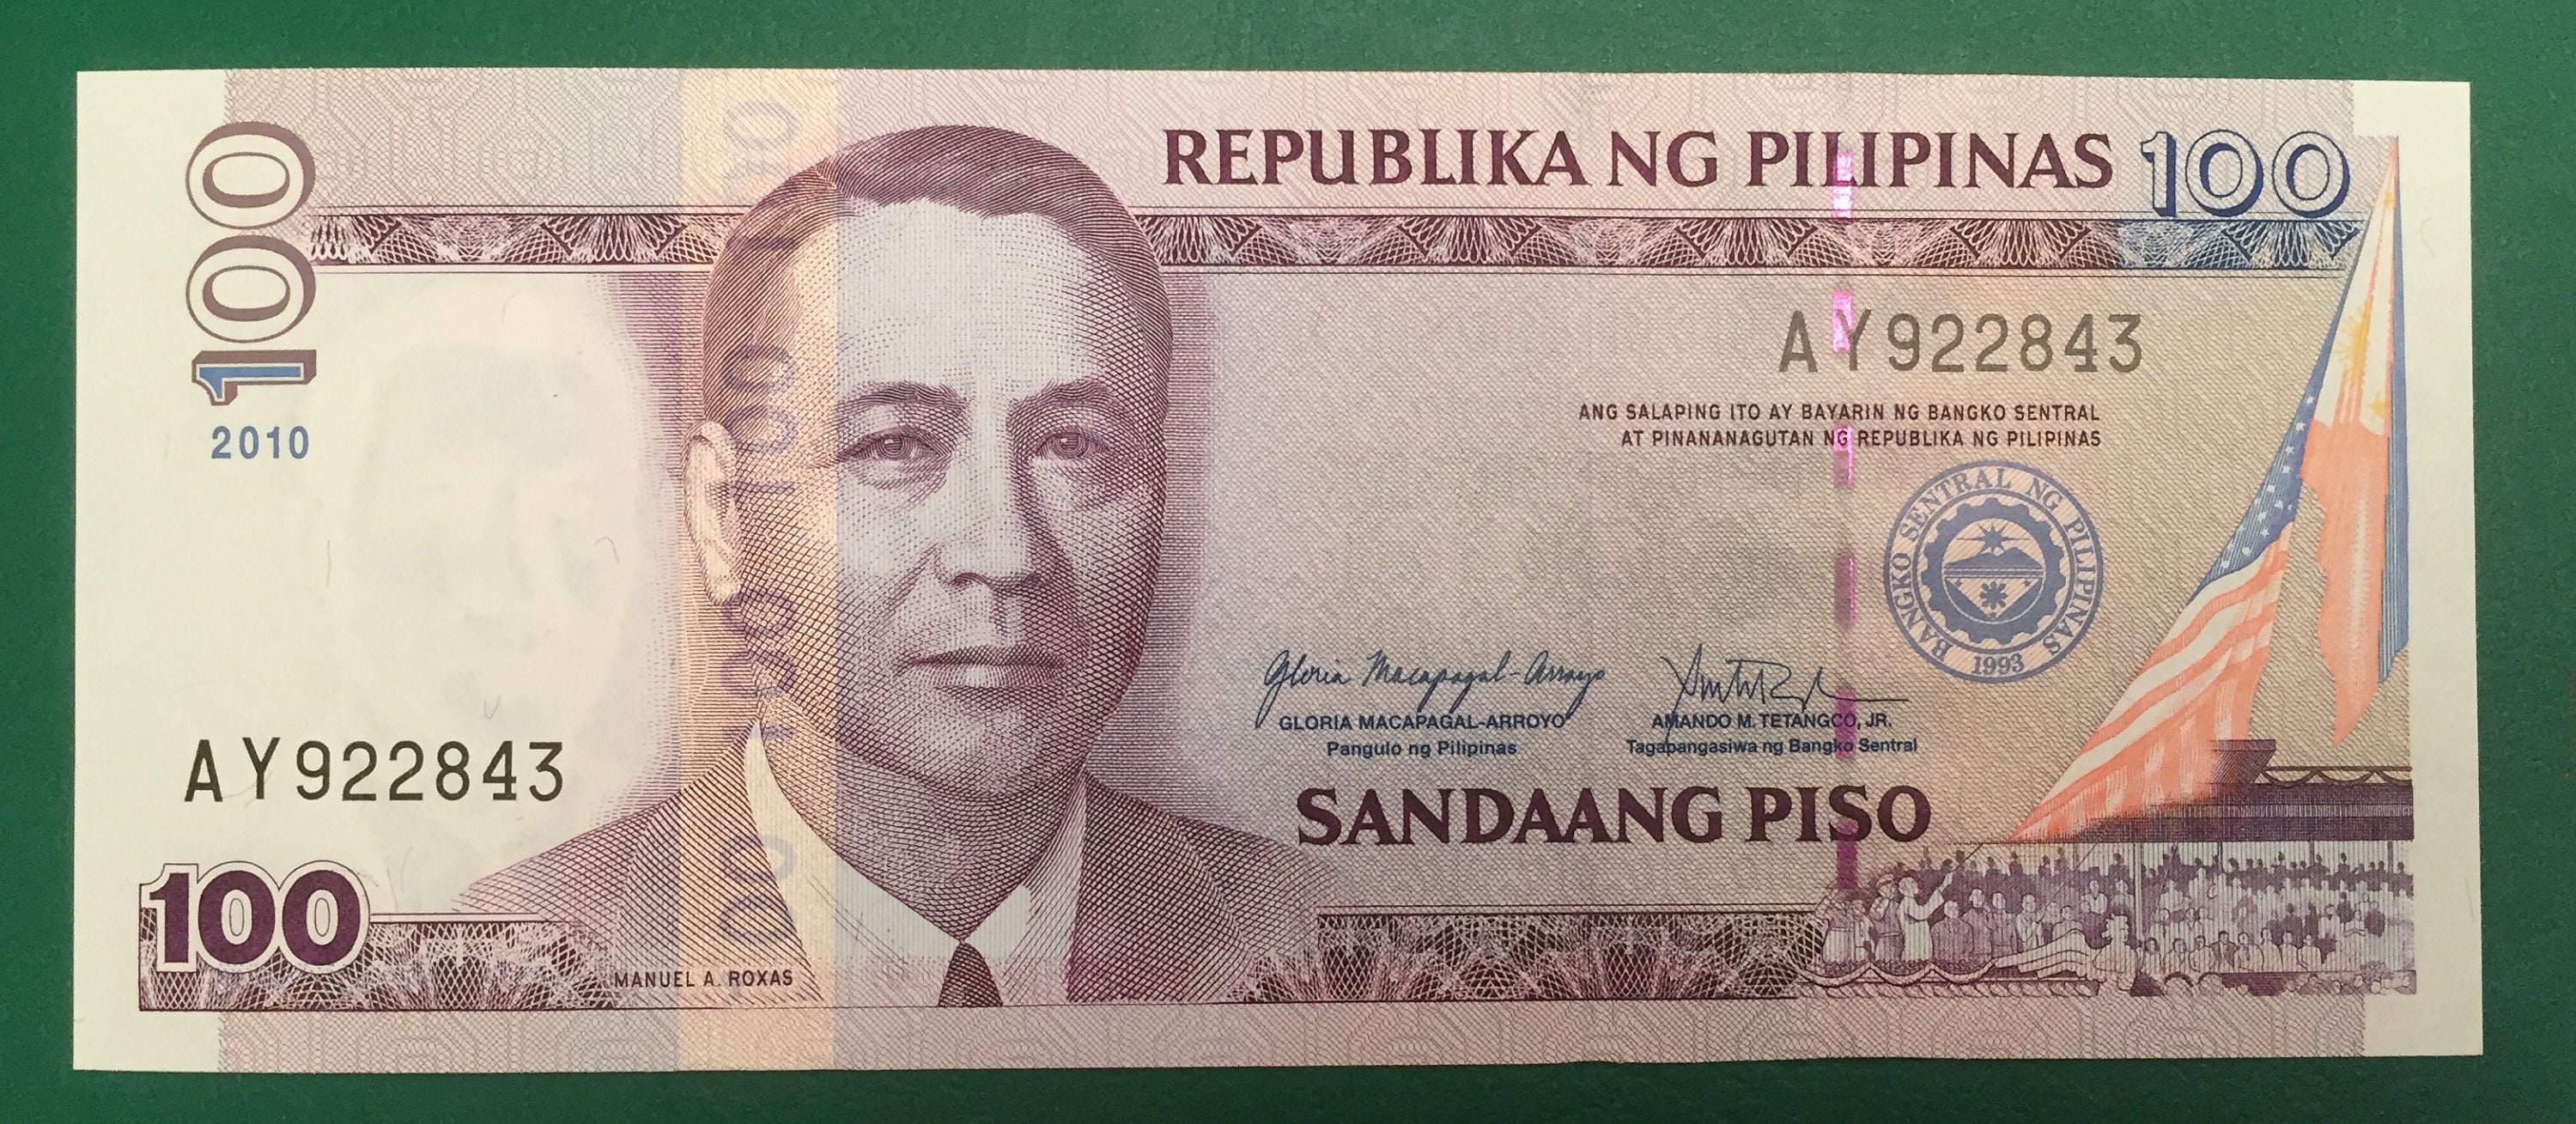 PHILIPPINES 2019 20 Piso NGC Bimetallic NGC Coin Uncirculated UNC